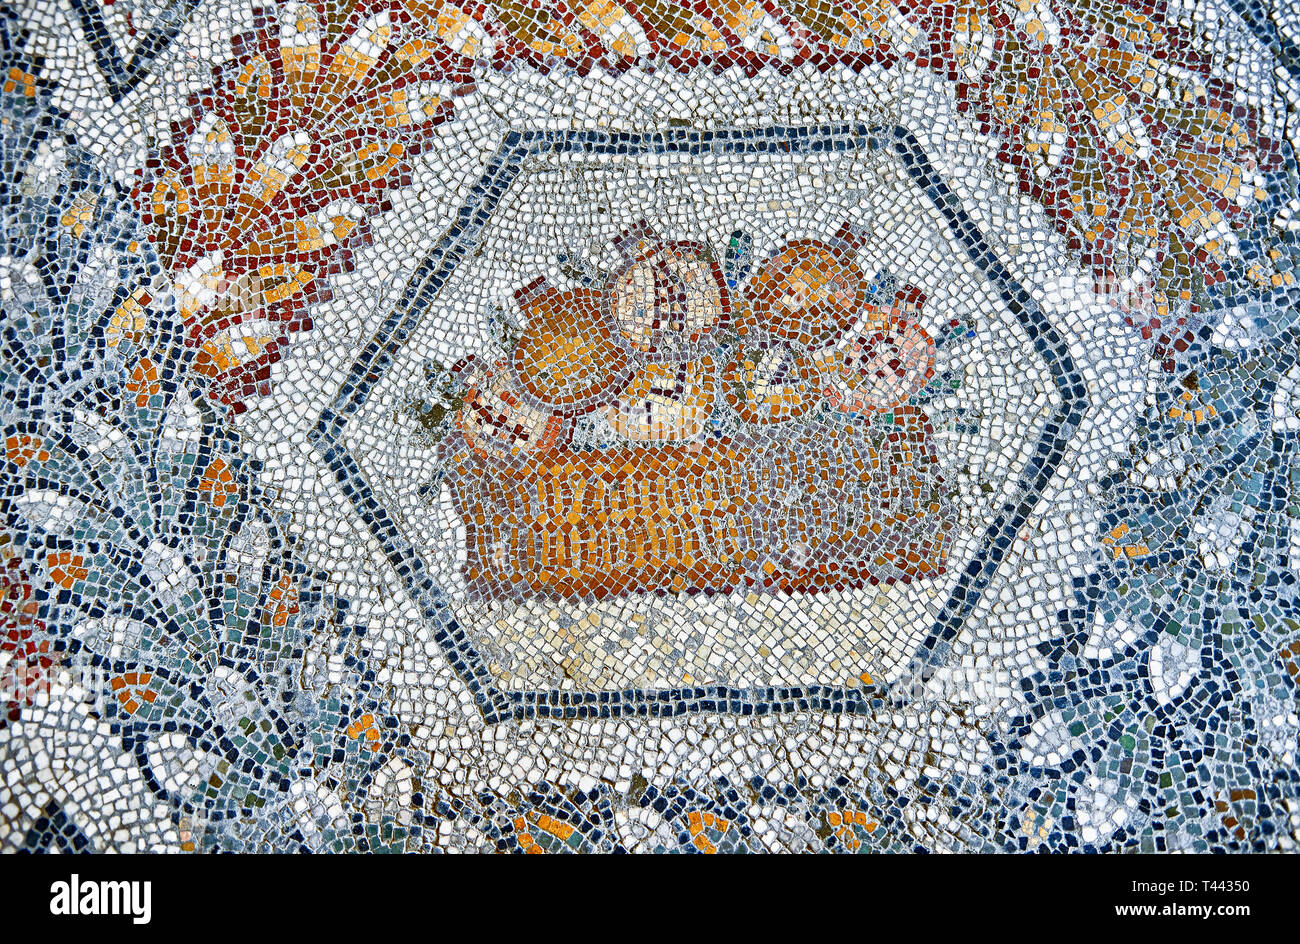 3e siècle mosaïque romaine de bord de grenades dans un panier de Thugga, en Tunisie. Le Musée du Bardo, Tunis, Tunisie. Banque D'Images